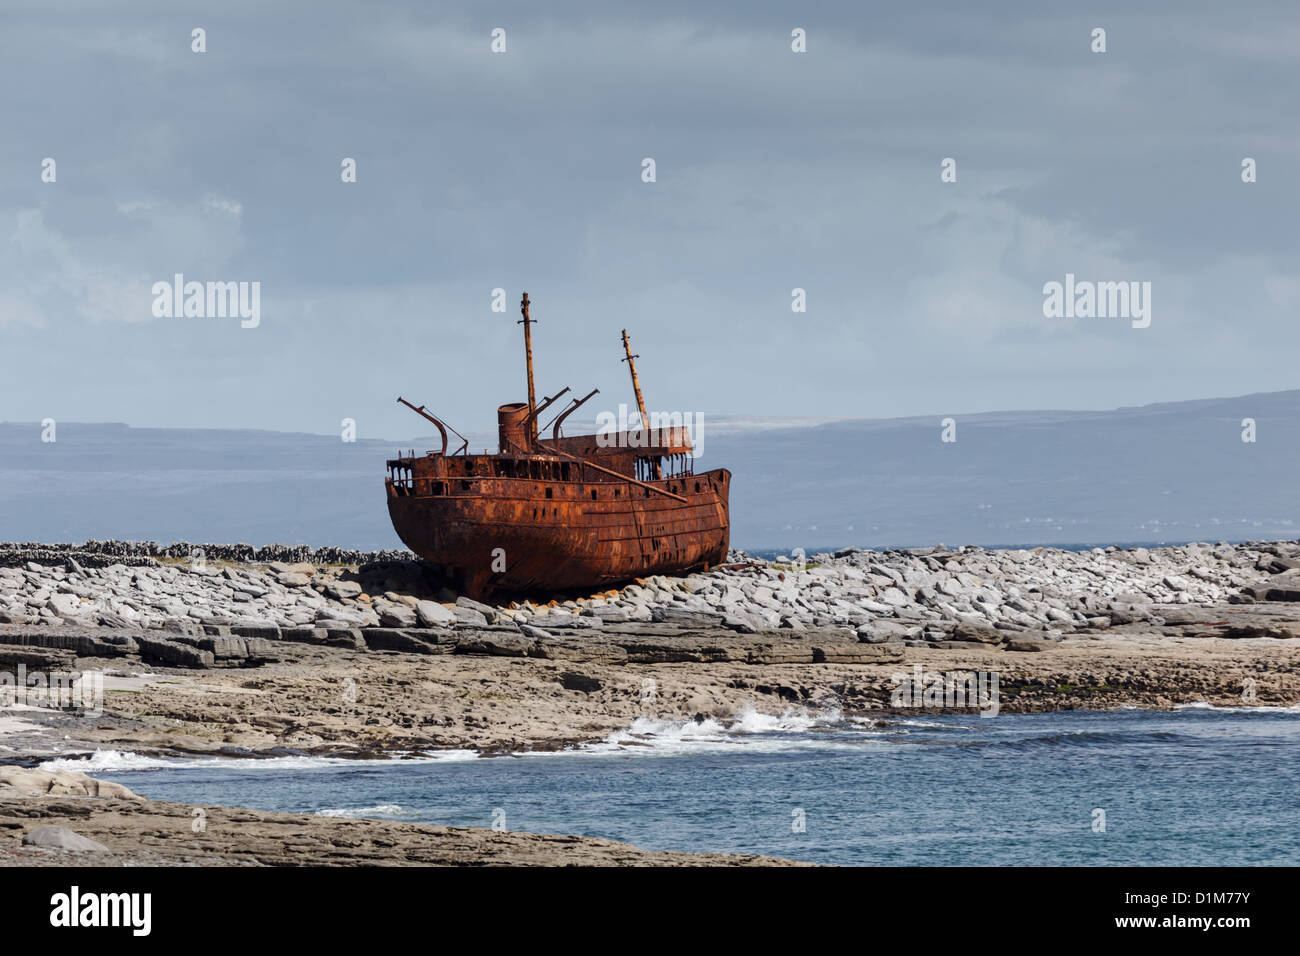 Le cargo plassey inishee naufrage près de l'Irlande dans les années 1960. seule sa carcasse rouillée reste sur les rochers à marée basse Banque D'Images